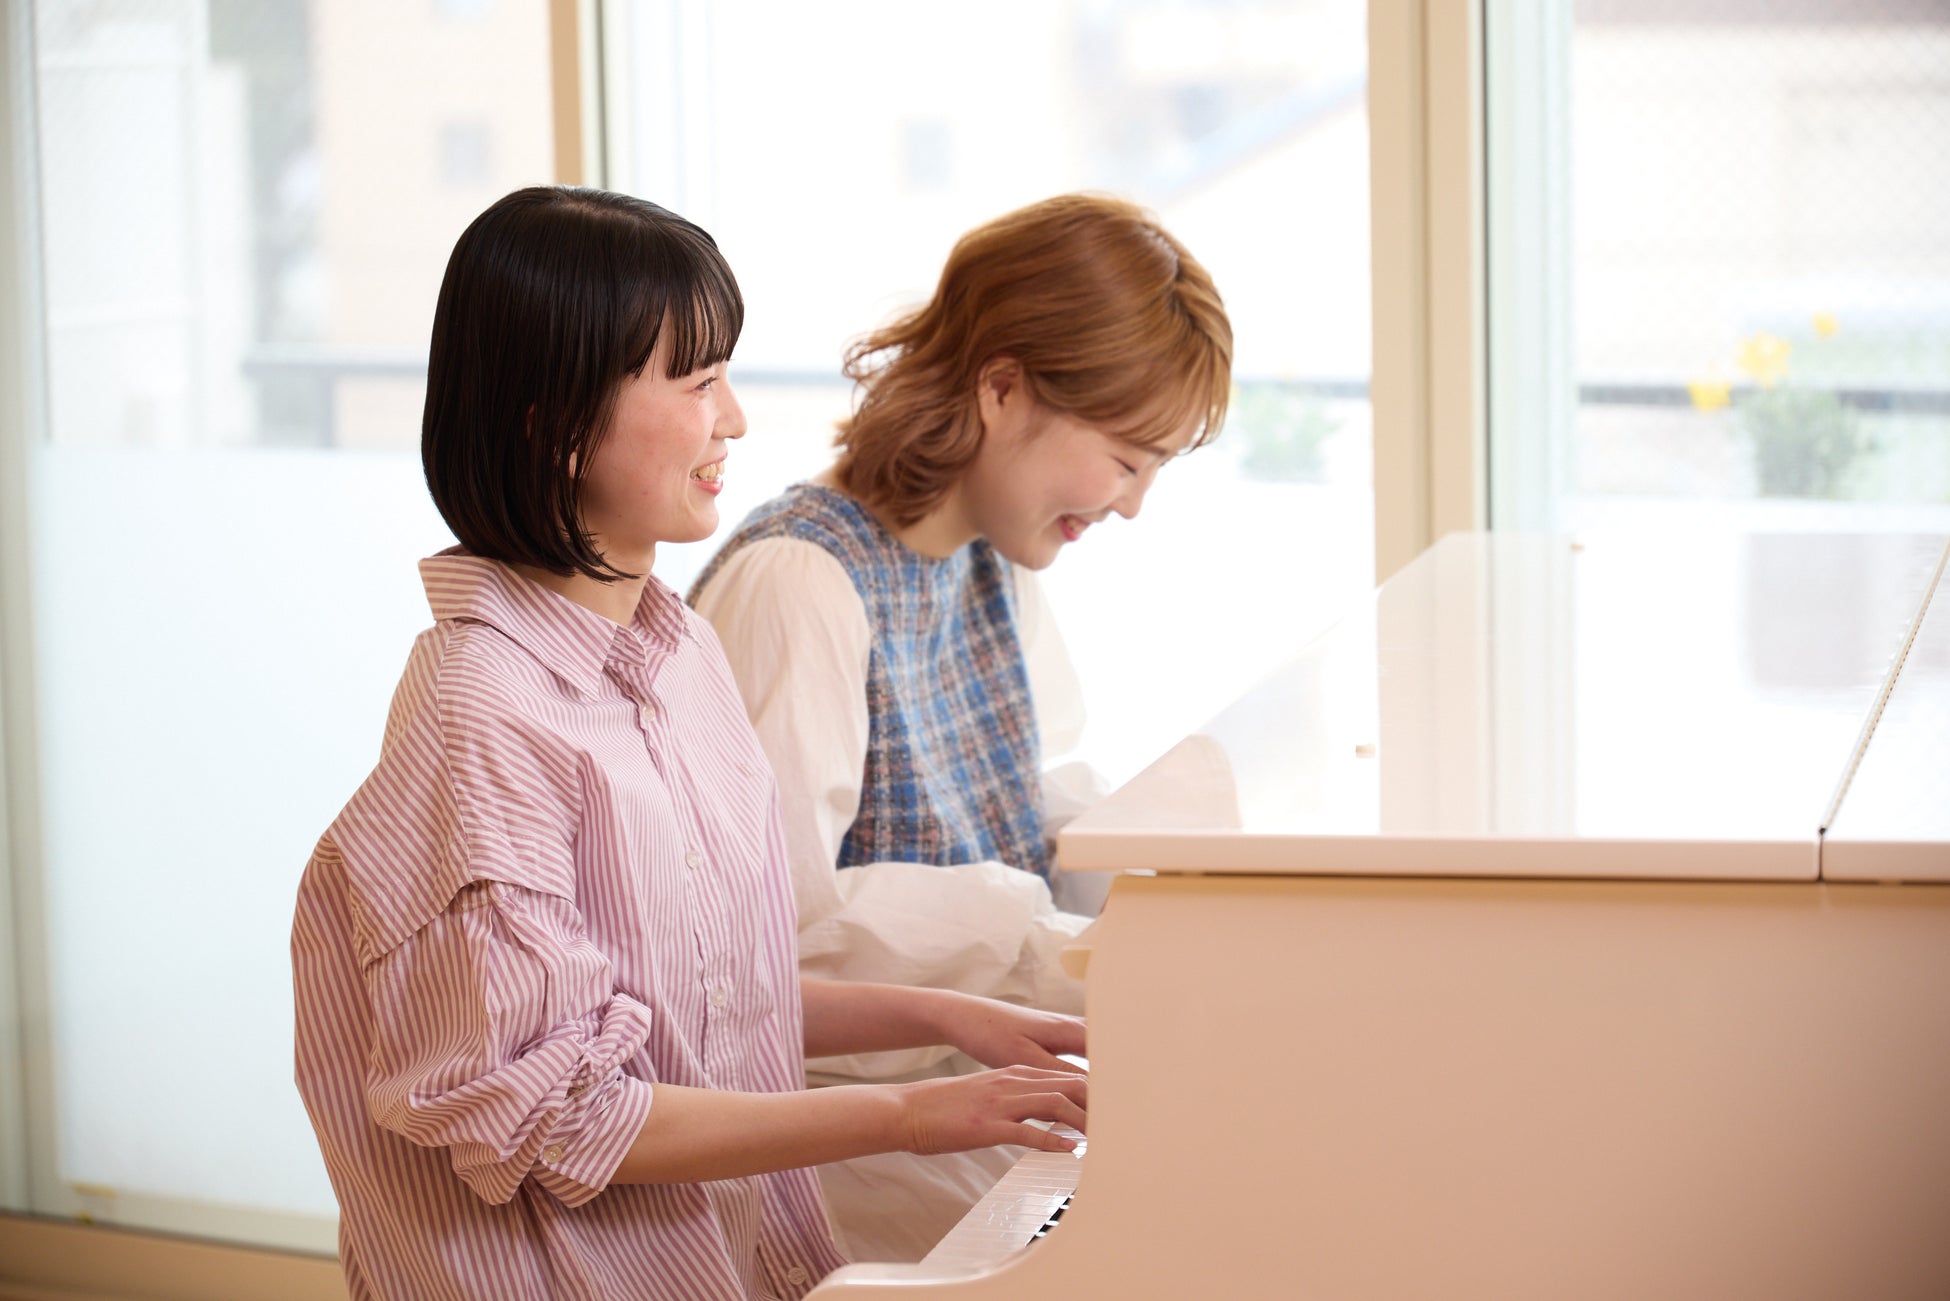 未経験者に特化した「Hanaポップスピアノ教室」が名古屋にオープン